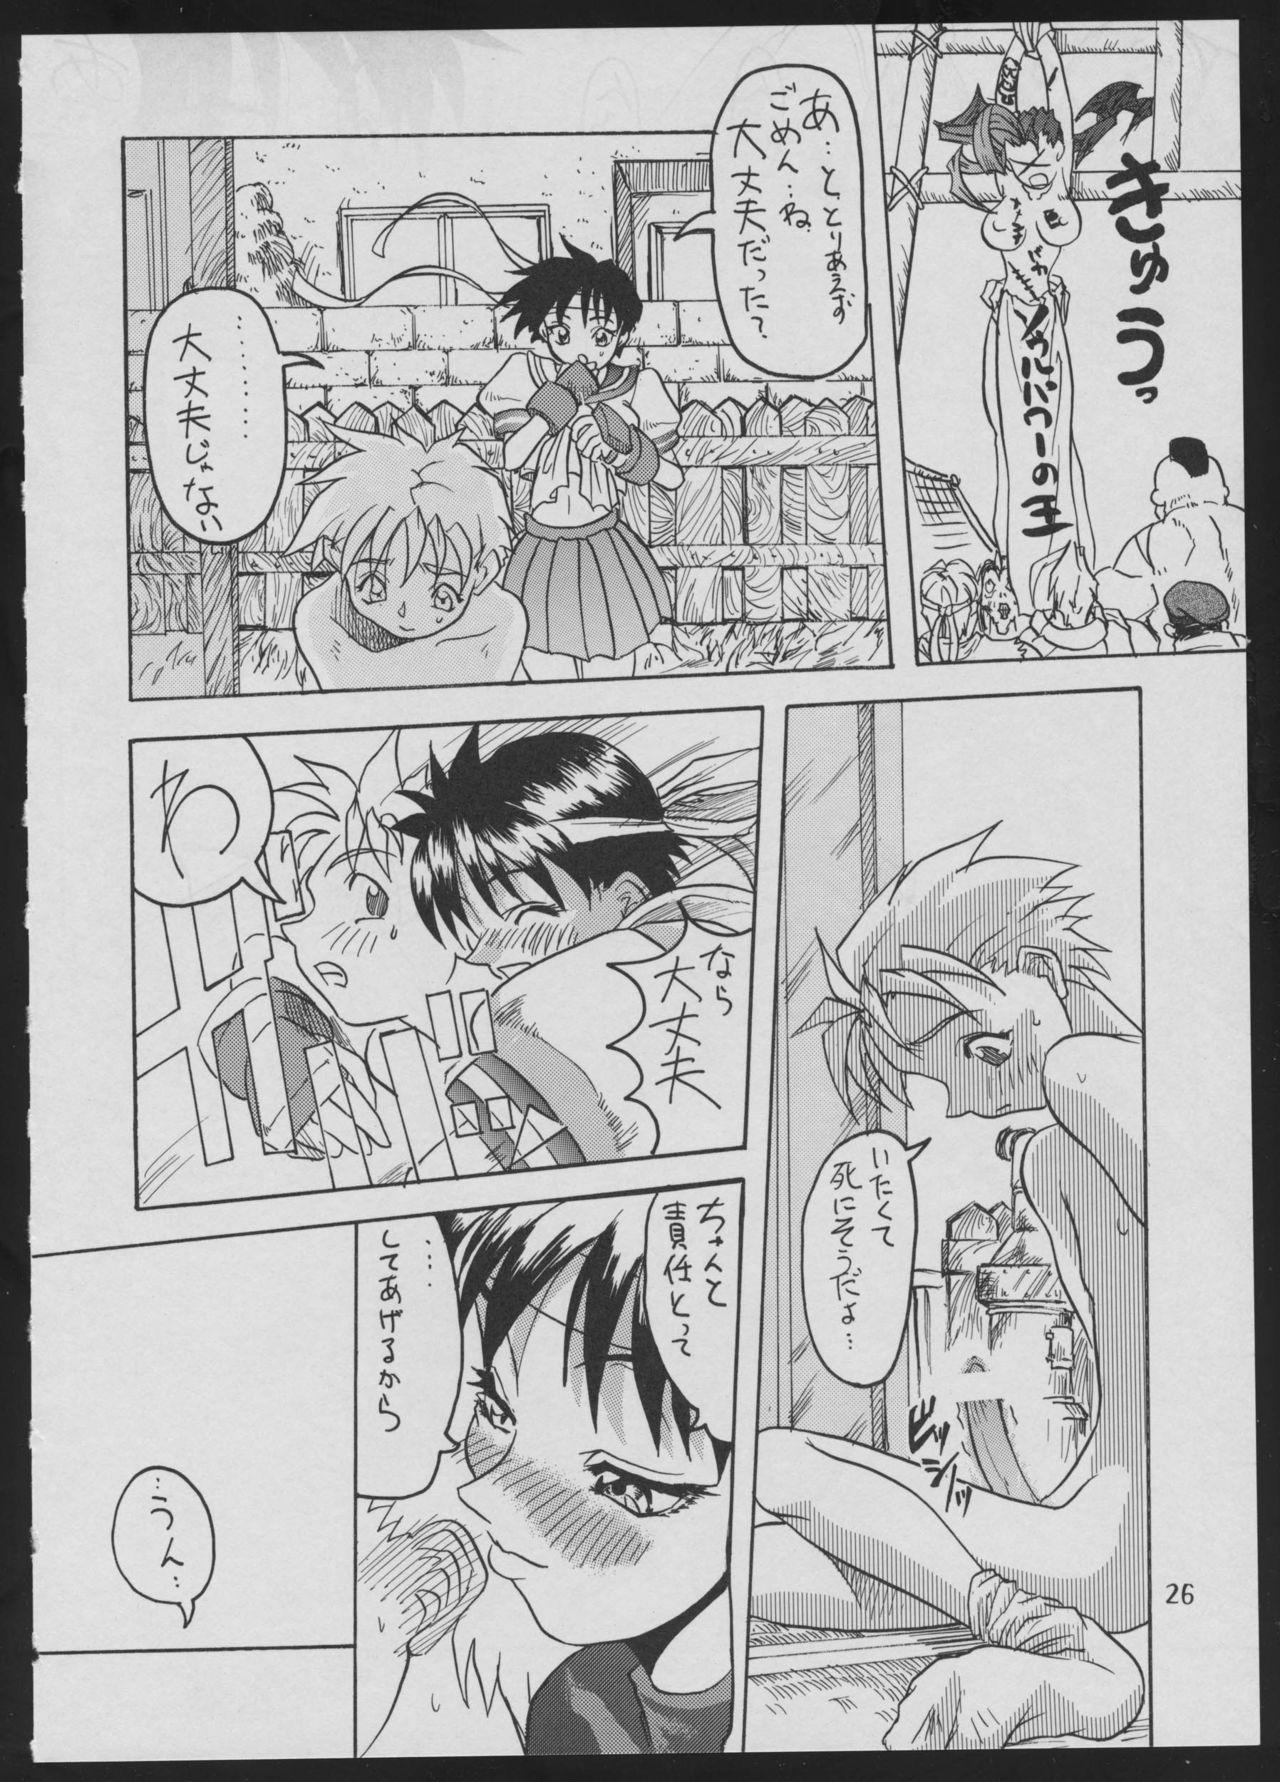 '96 Natsu no Game 18-kin Special 25